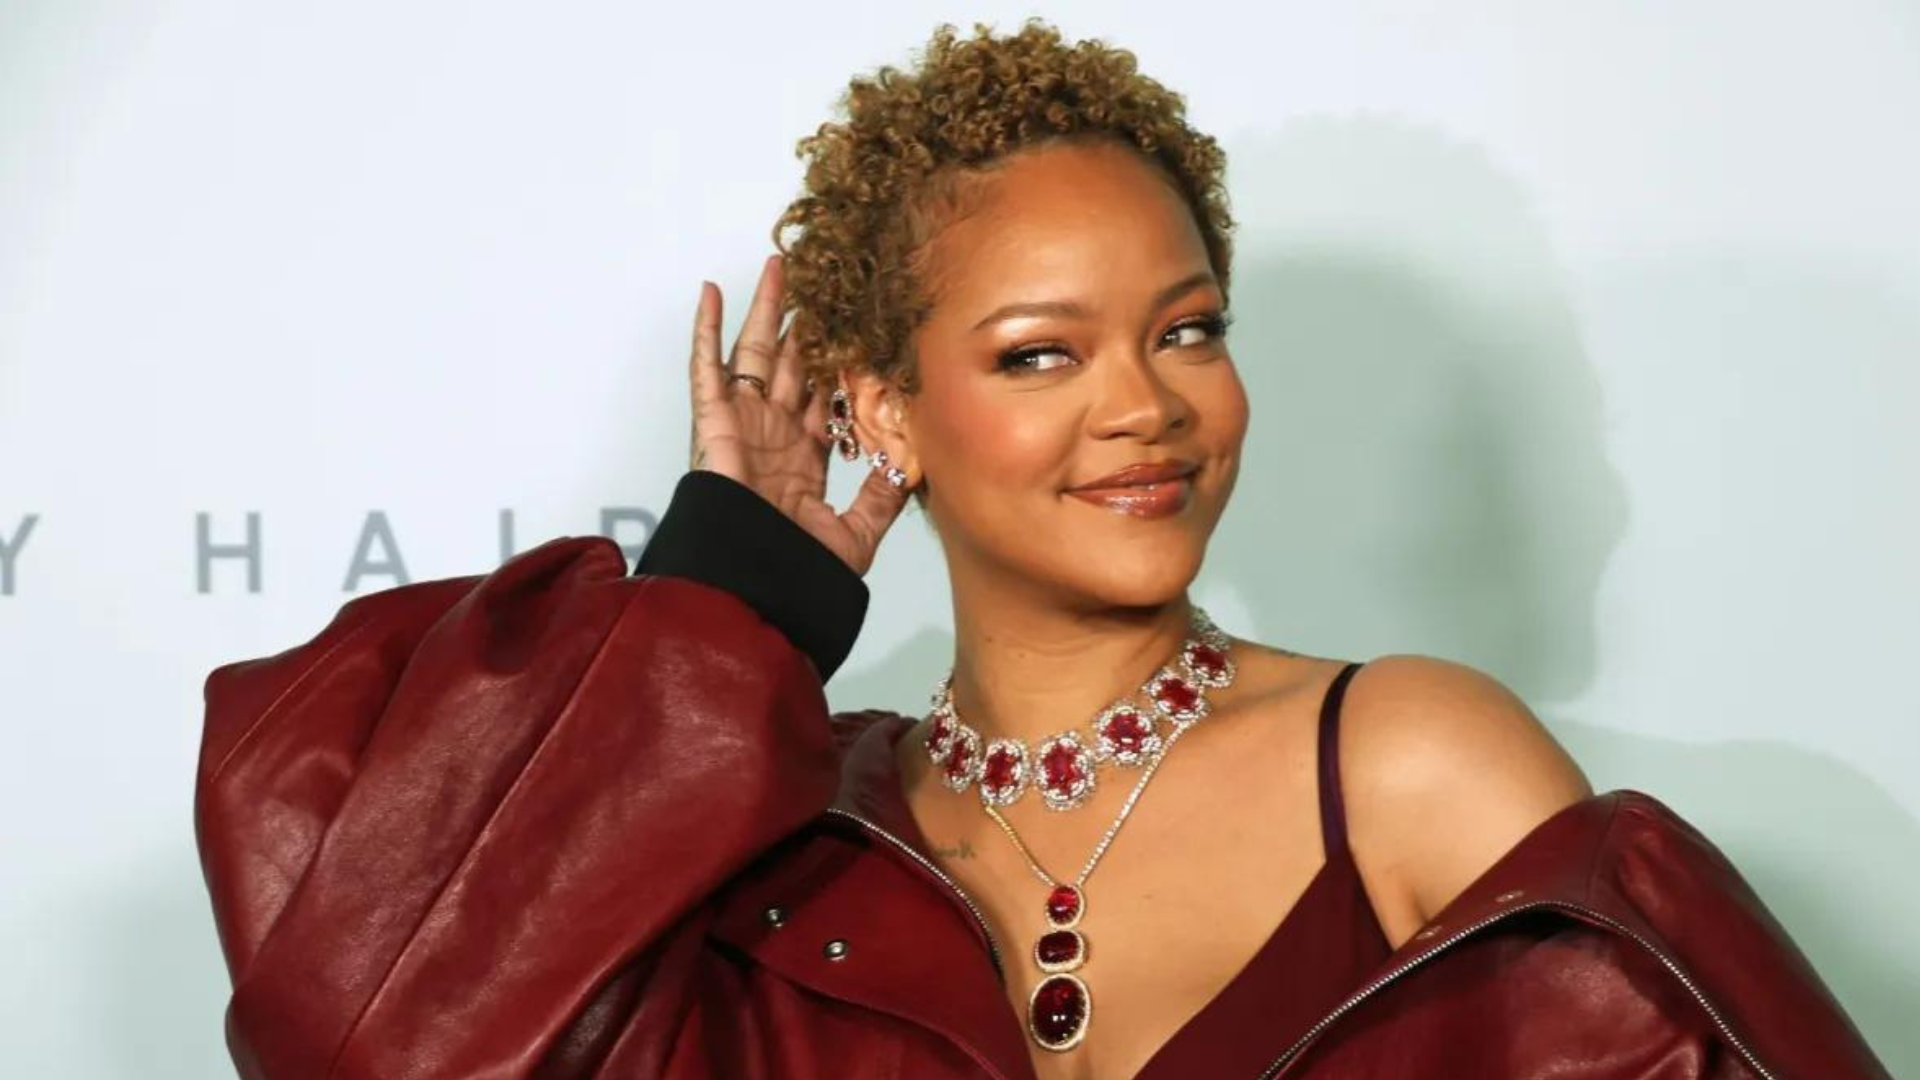 Rihanna confirma novas músicas prontas e nega rumores de gravidez